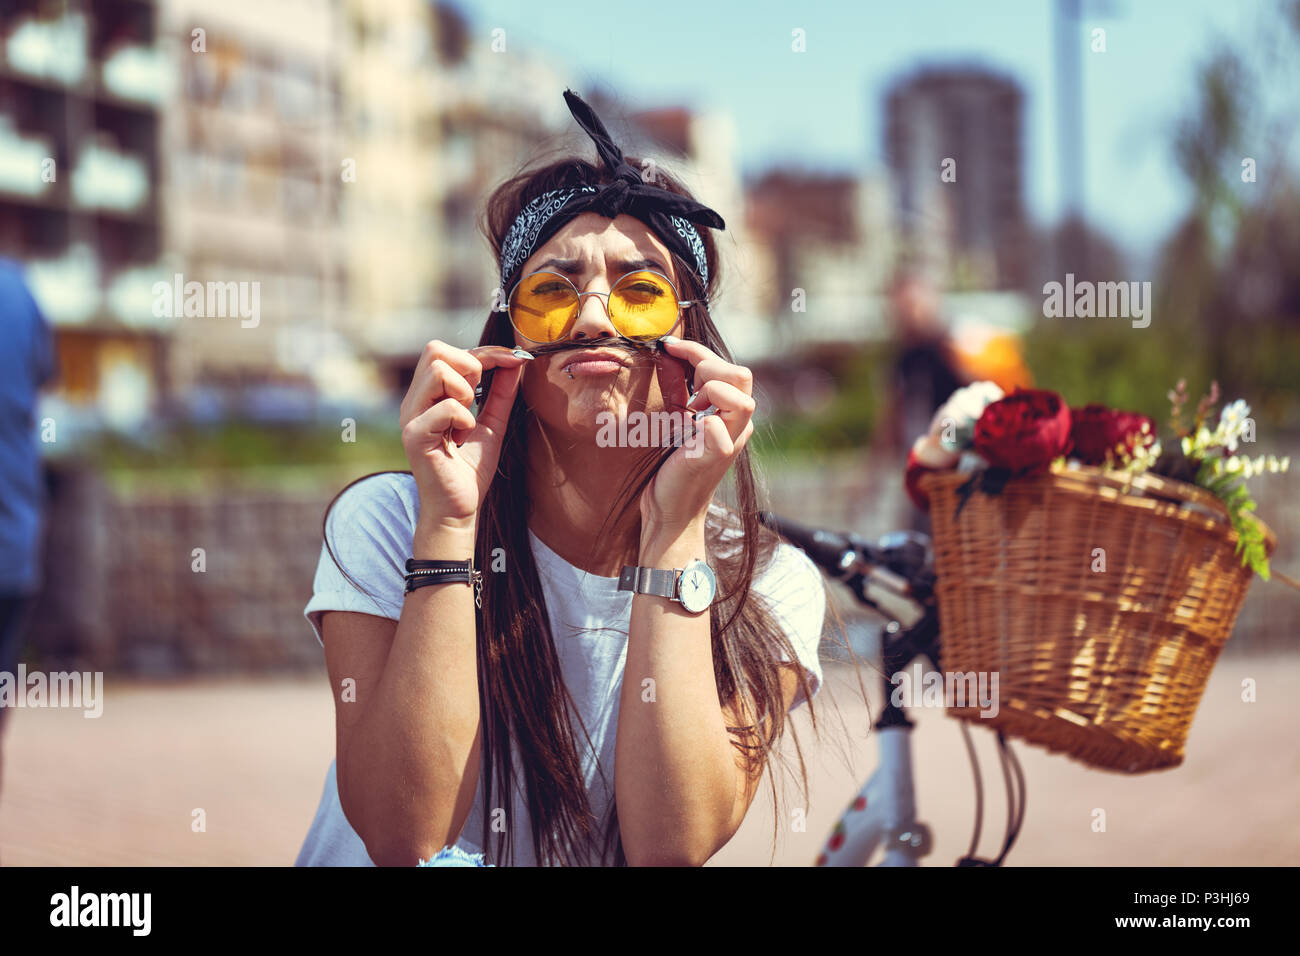 Recht glücklich junge Frau genießen und Spaß haben, schnurrbärte mit Haaren, in einem Sommer sonnigen Tag, neben dem Fahrrad mit Blumenkorb. Stockfoto